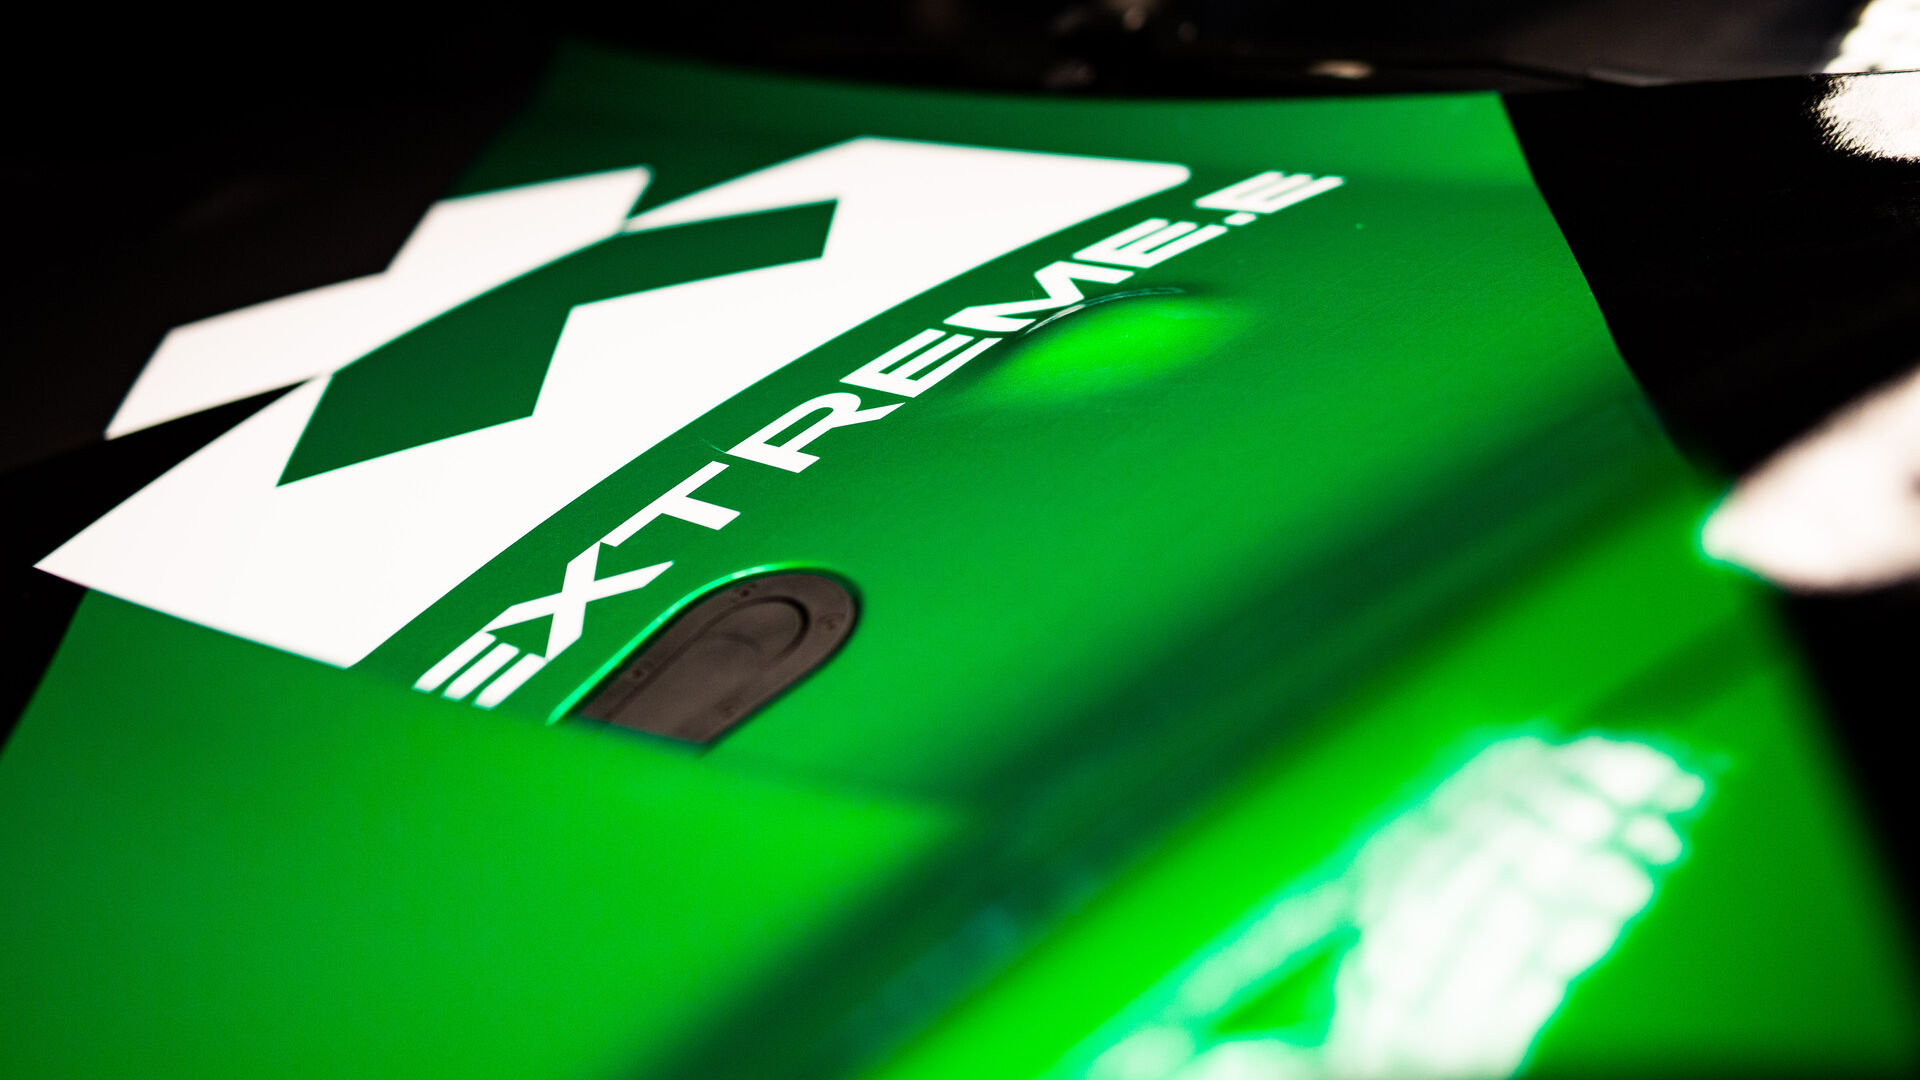 Extreme X: i particolari tecnici della vettura Extreme E del team Odyssey 21 al chiuso